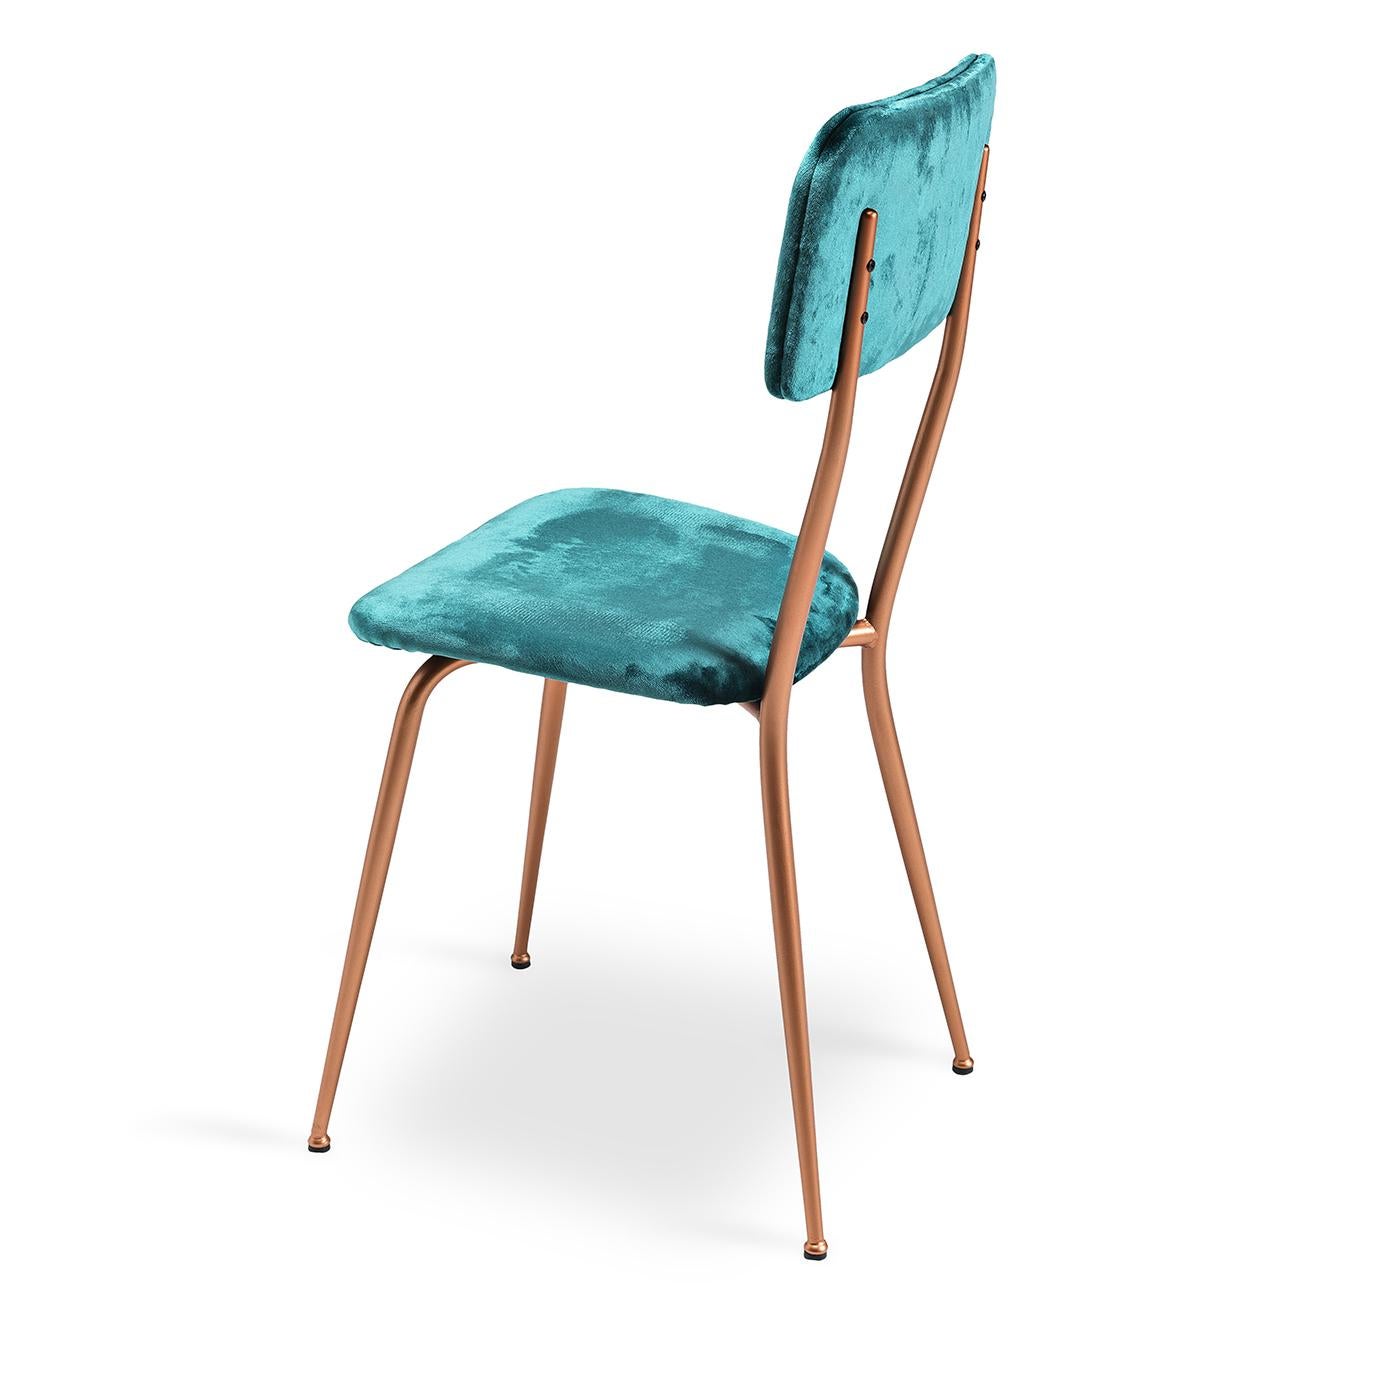 La chaise Miss Ava 4 actualise une silhouette classique avec une combinaison ultra-stylisée de tons et de textures. Son cadre métallique discret présente une finition cuivre brossé pour un look résolument moderne. Tapissé d'un luxueux velours